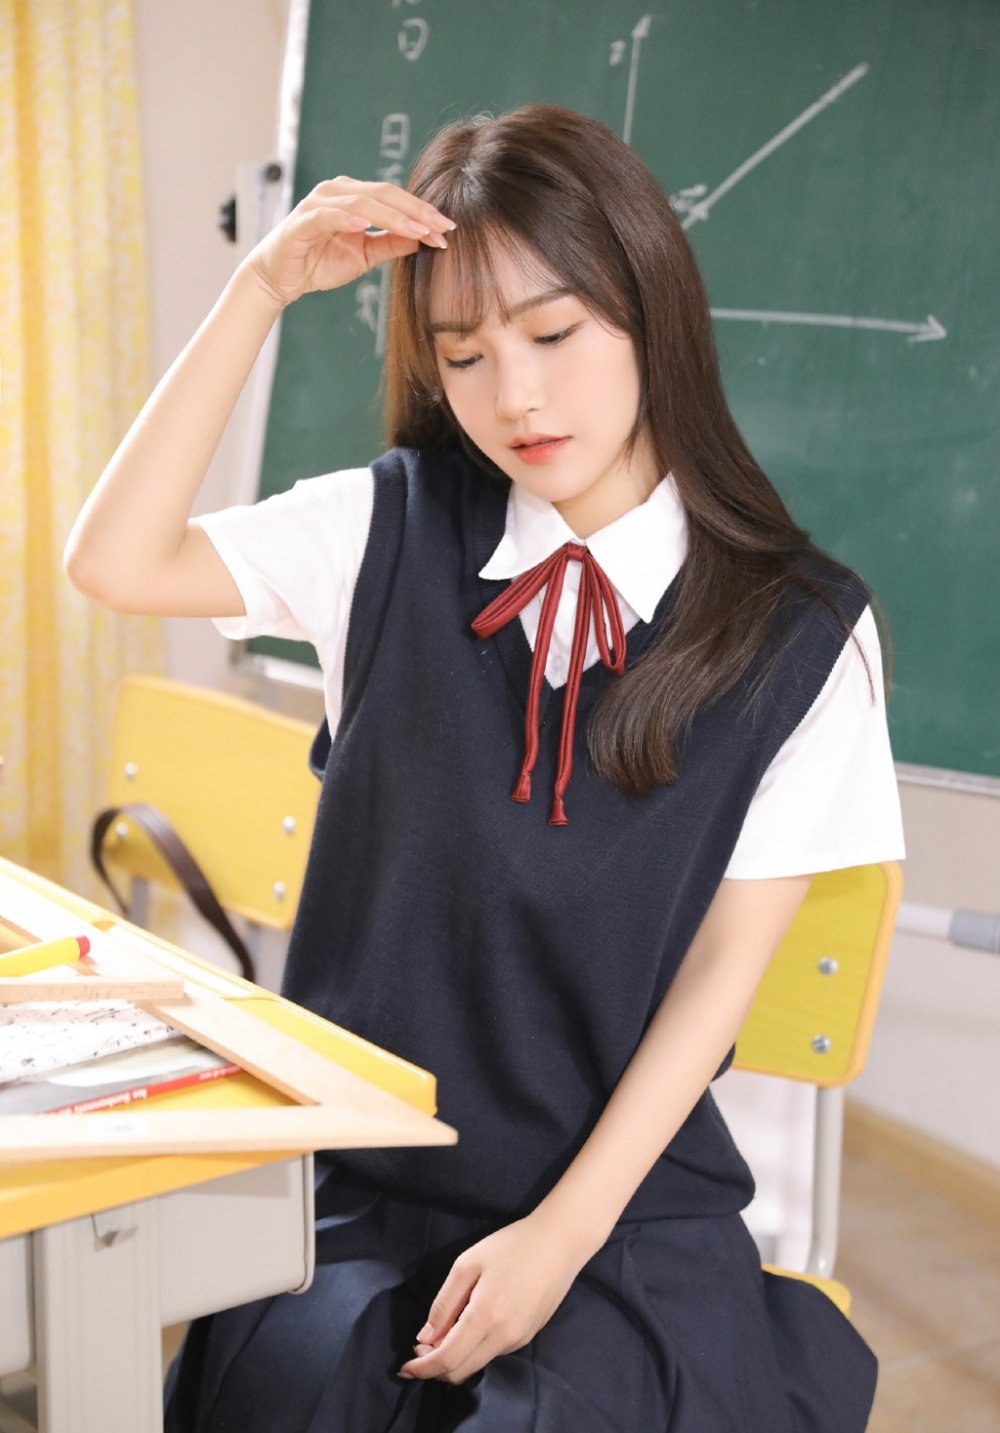 清纯美女学生妹jk制服教室图片